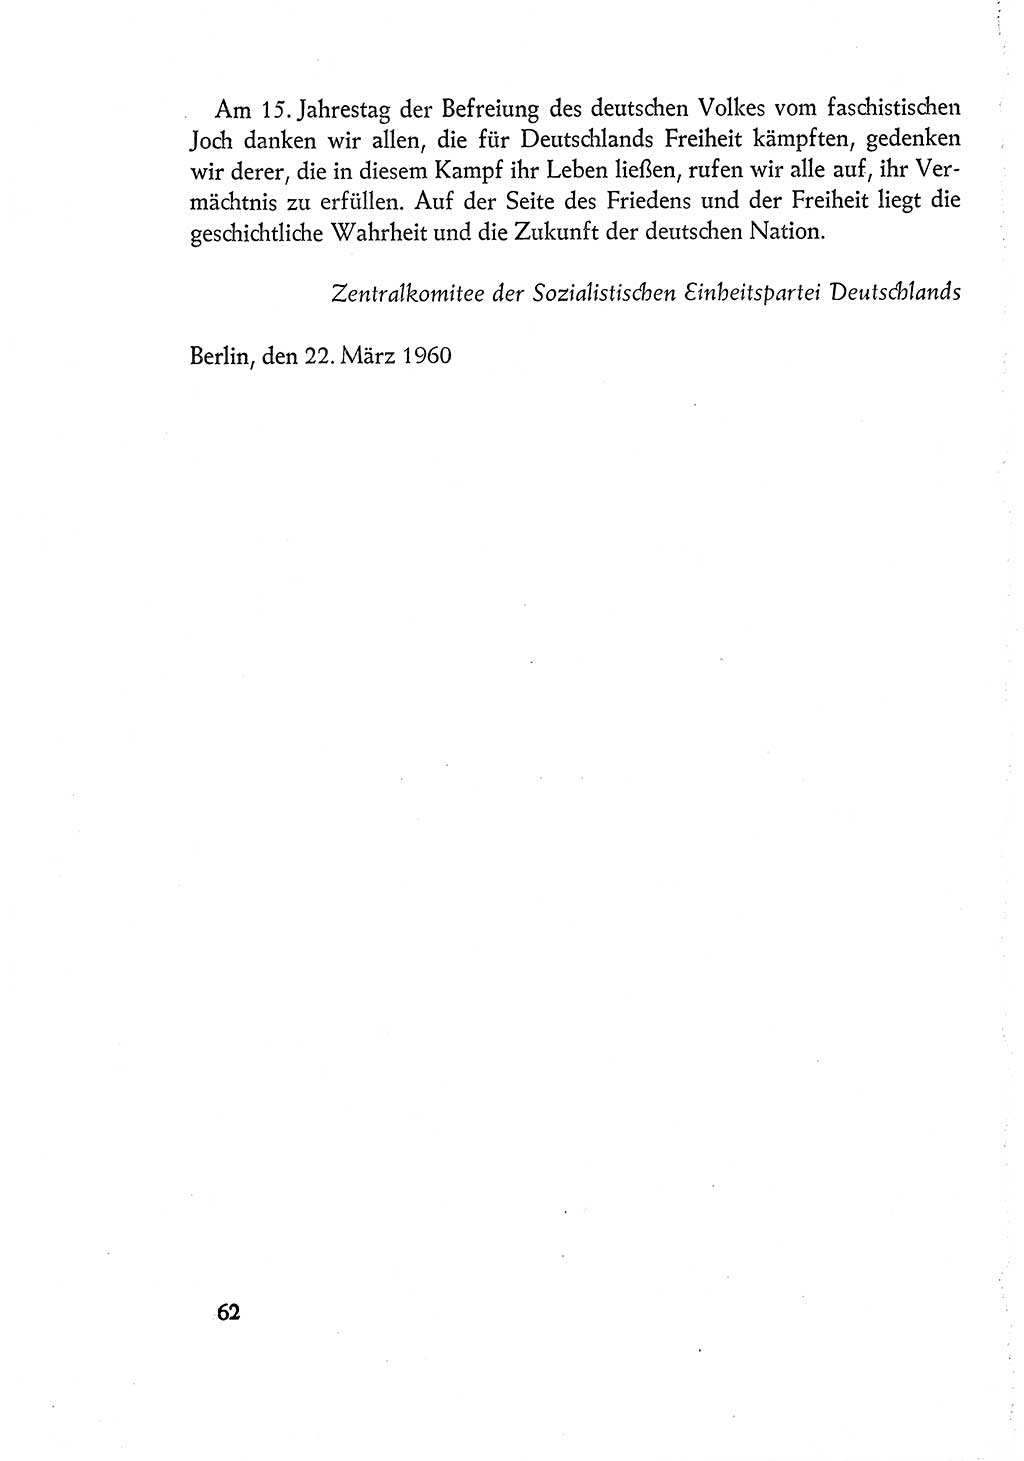 Dokumente der Sozialistischen Einheitspartei Deutschlands (SED) [Deutsche Demokratische Republik (DDR)] 1960-1961, Seite 62 (Dok. SED DDR 1960-1961, S. 62)